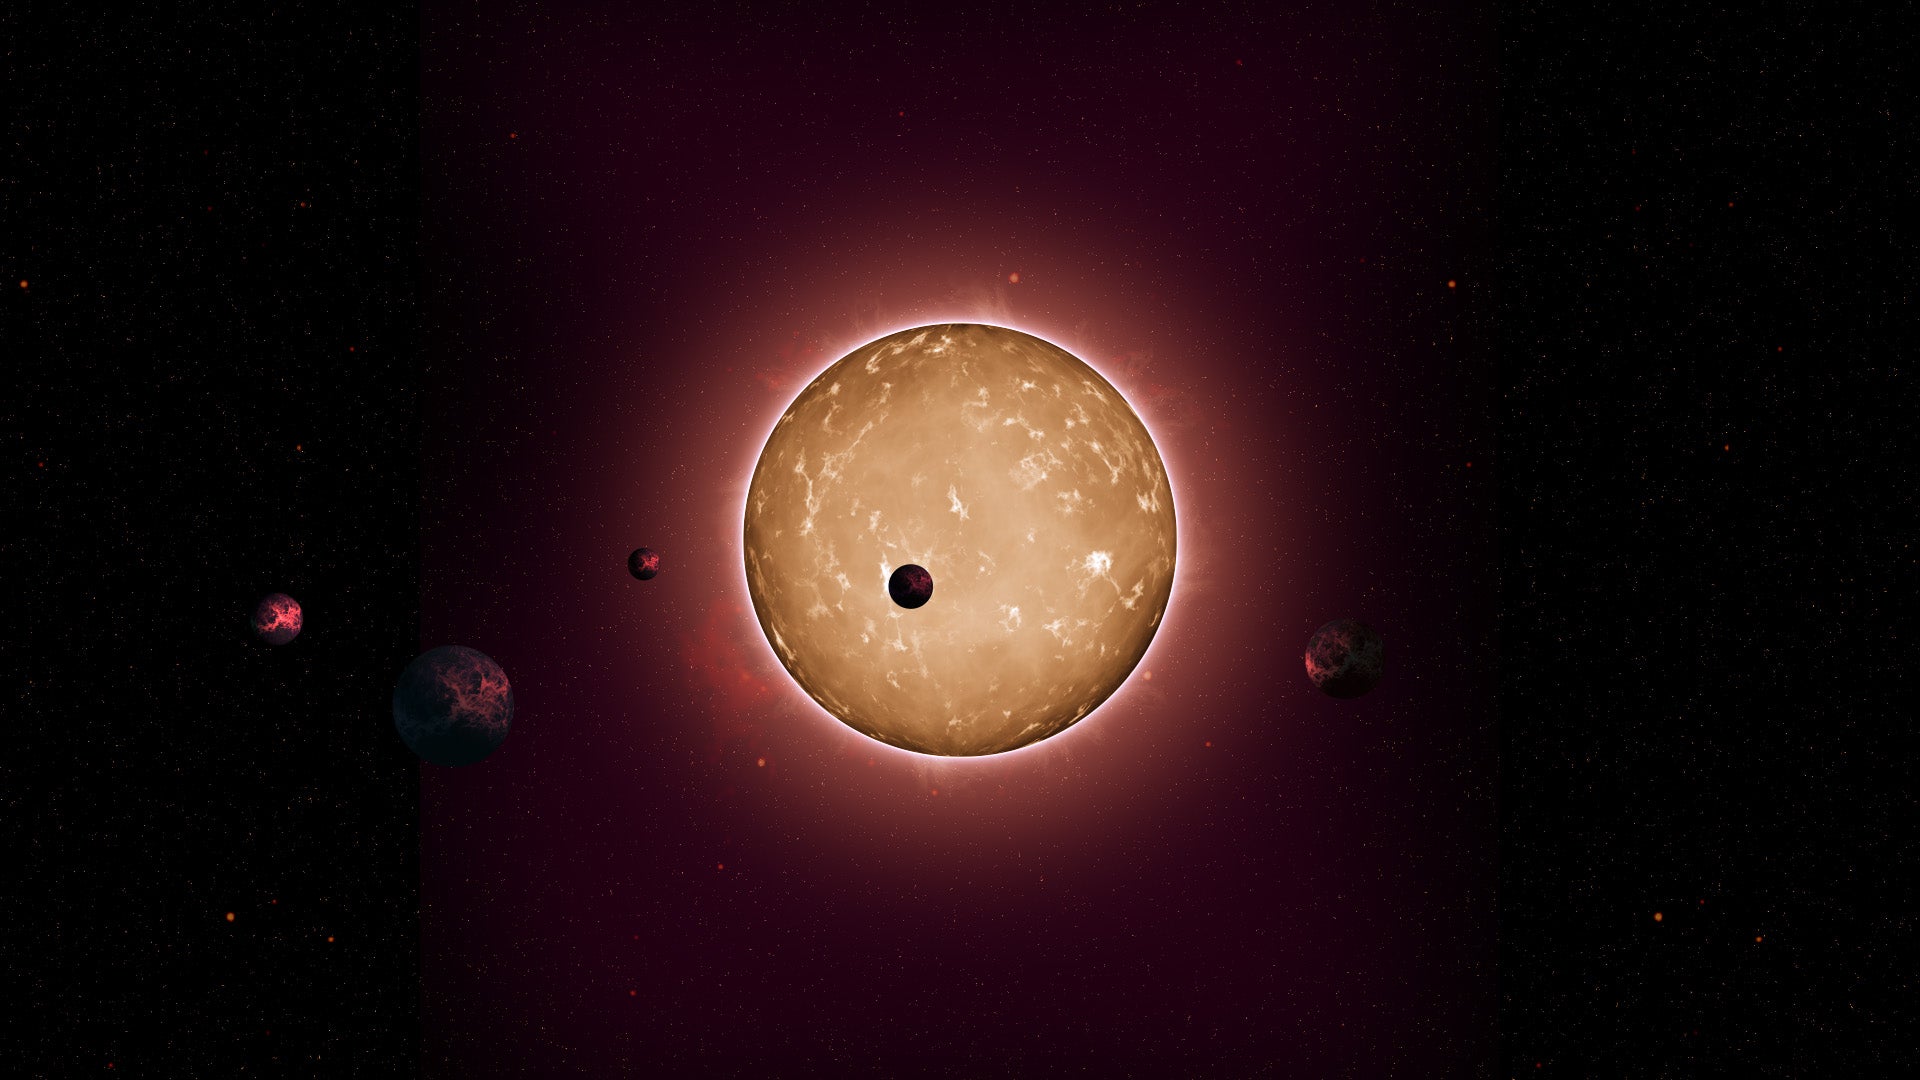 Rendering of the Kepler-444 planetary system